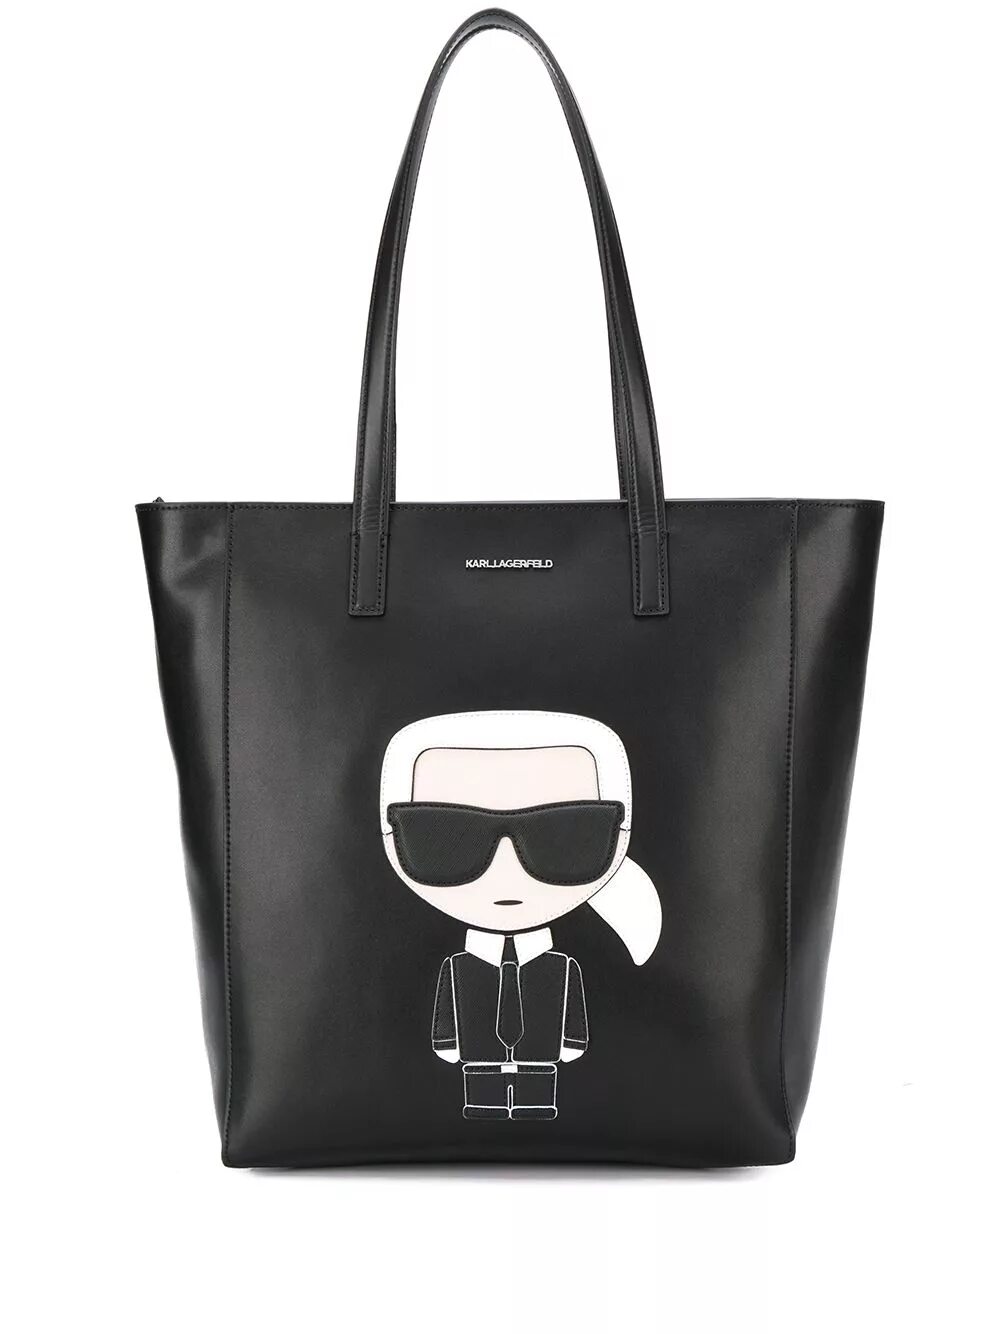 Купить сумку лагерфельд оригинал. Сумка шоппер Karl Lagerfeld. Karl Lagerfeld сумка тоут. Сумка Karl Lagerfeld ikonik.